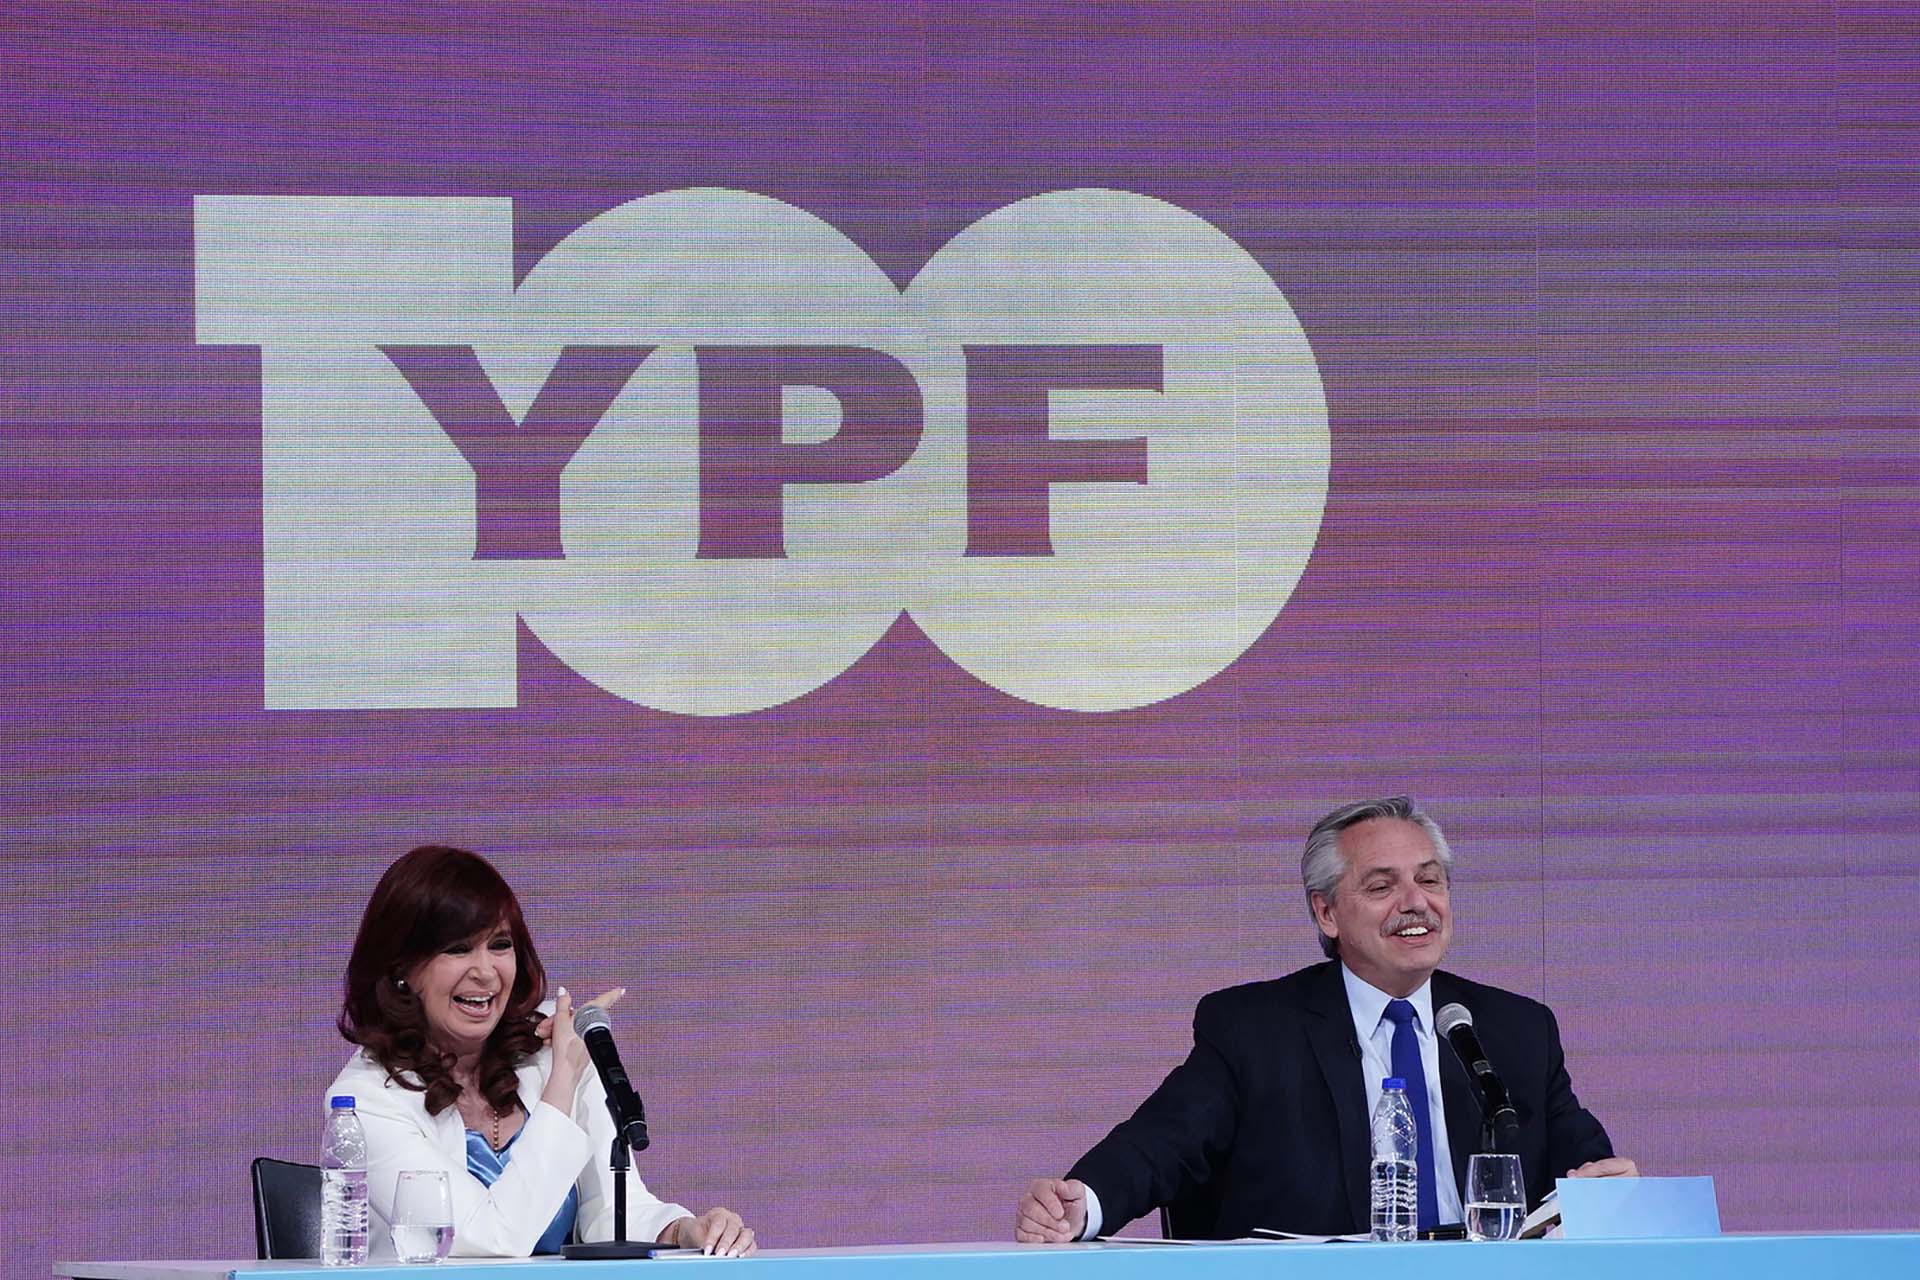 Alberto Fernandez y Cristina Fernandez de Kirchner durante el acto de YPF en Tecnópolis. Foto: Franco Fafasuli